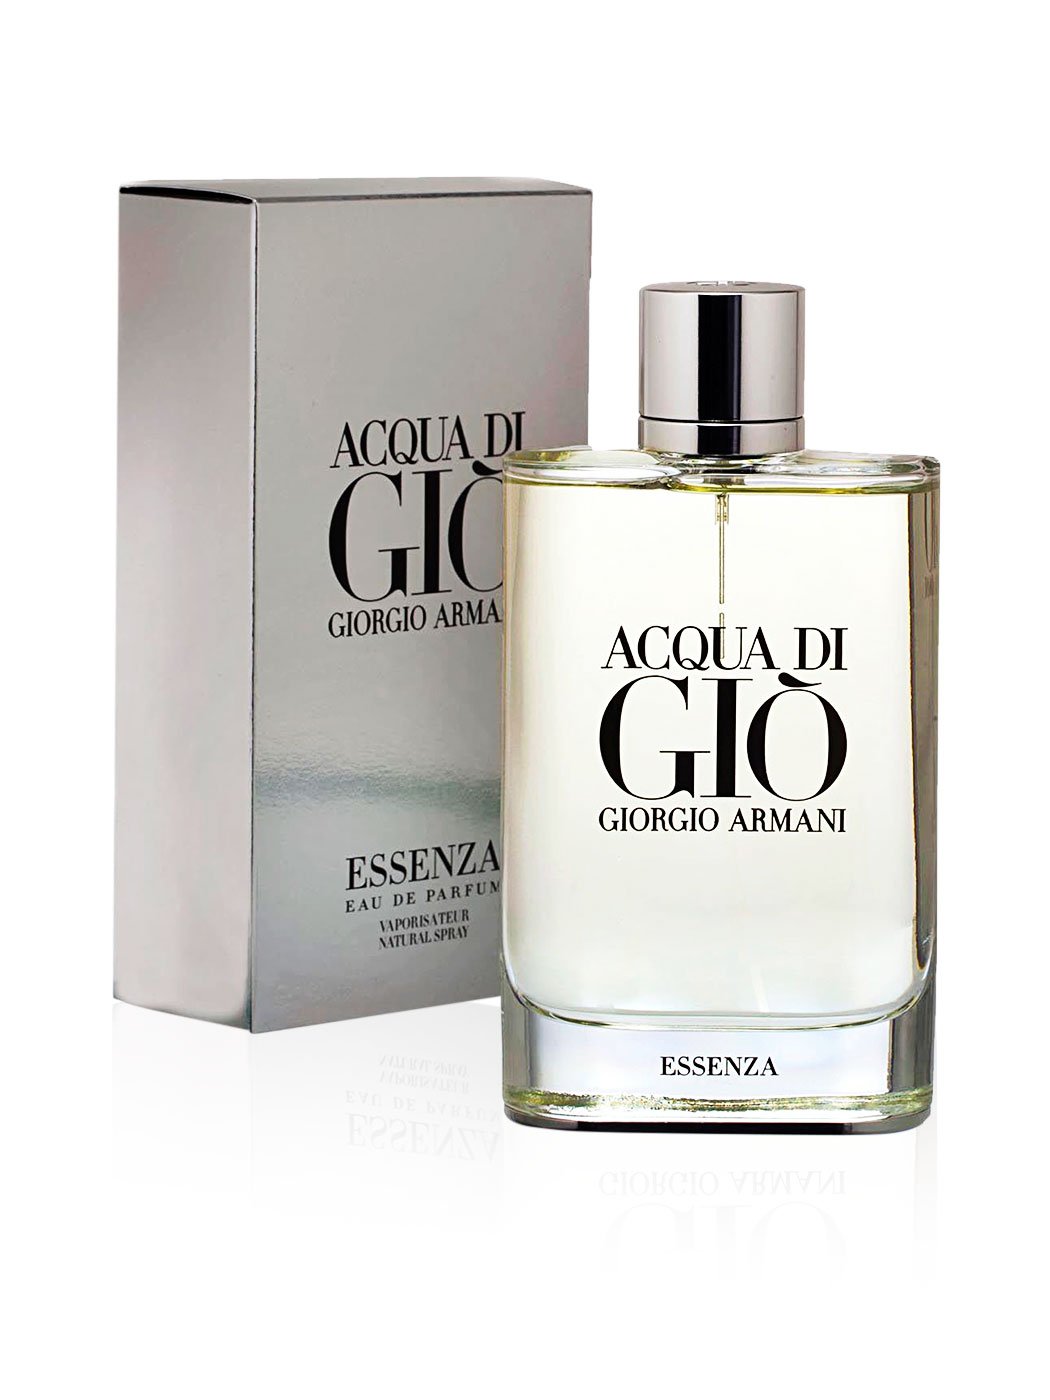 GIORGIO ARMANI - Acqua Di Gio Essenza para hombre / 125 ml Eau De Parfum Spray